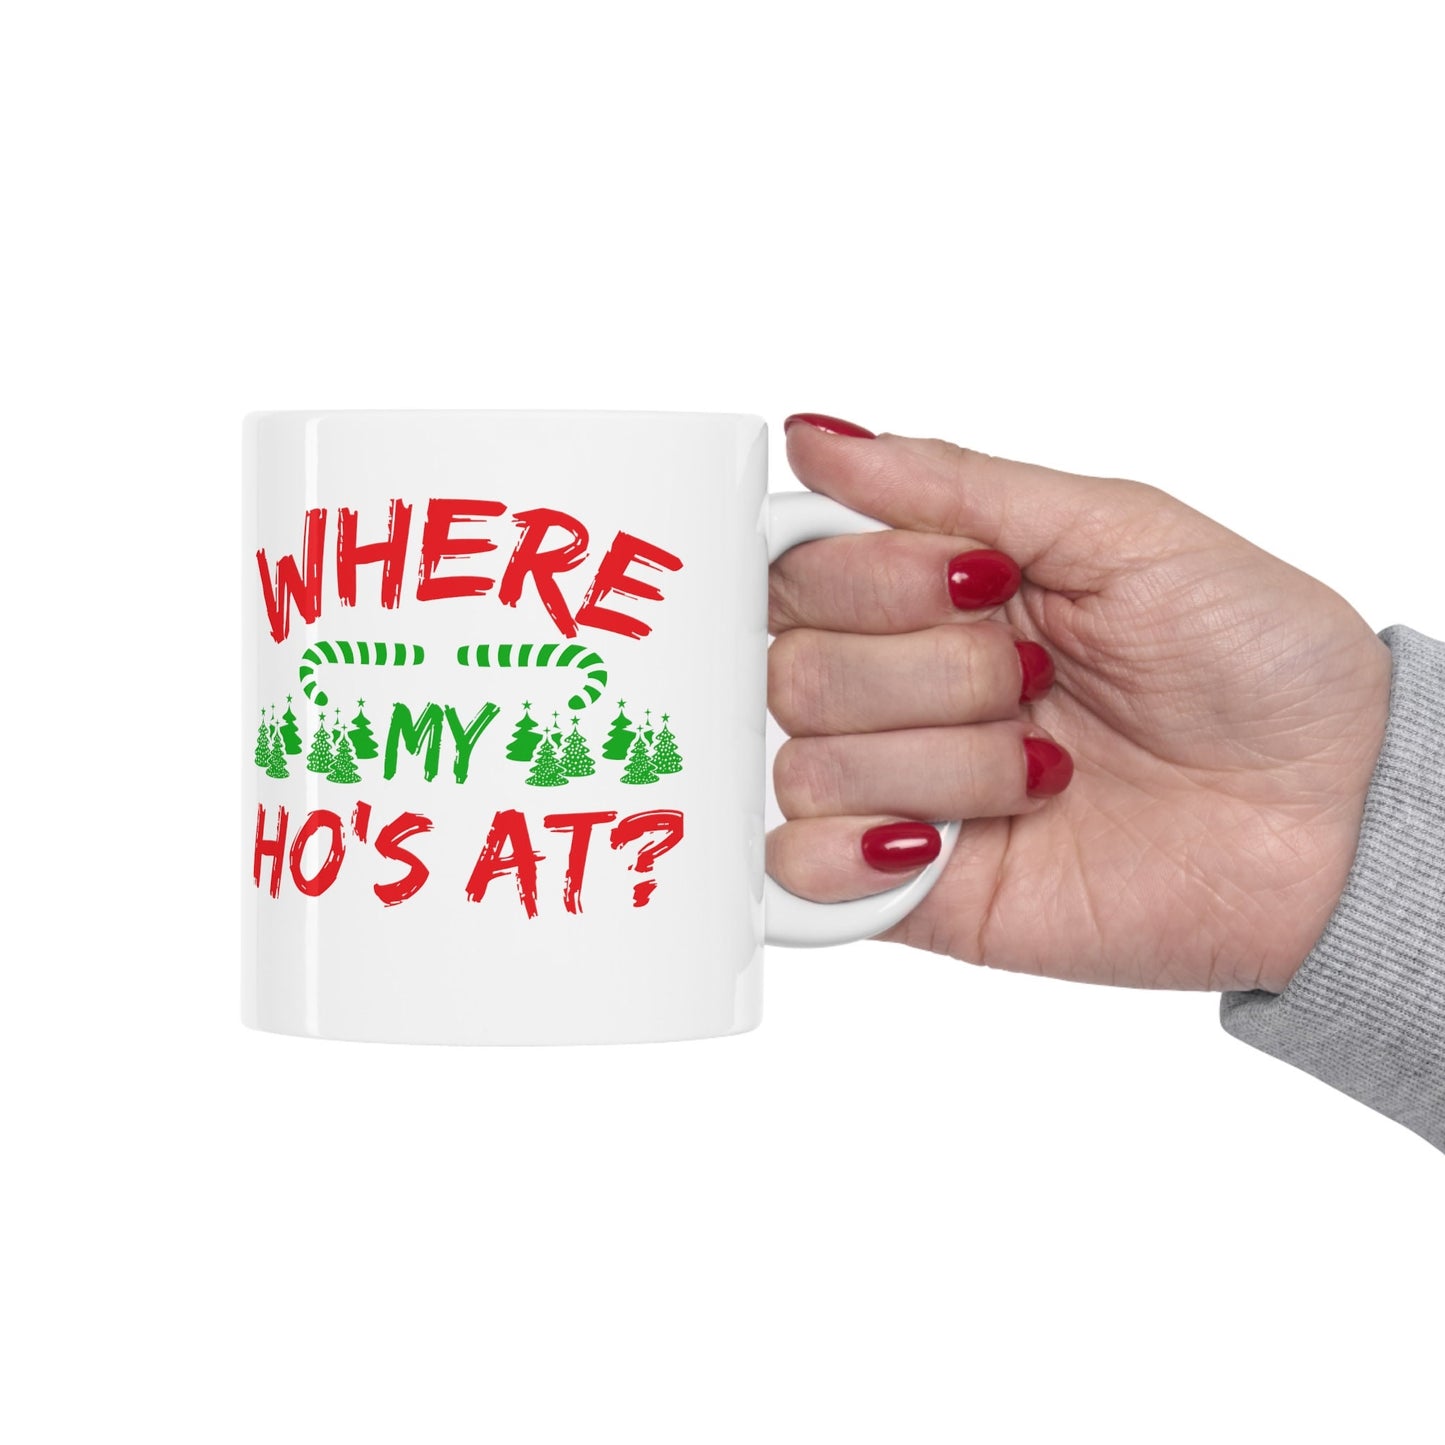 Where My Hos At Christmas Mug, Perfect Holiday Cheer Coffee Mug, Gift Mug for Christmas Spirit, Cute Christmas mugs for Family and friends